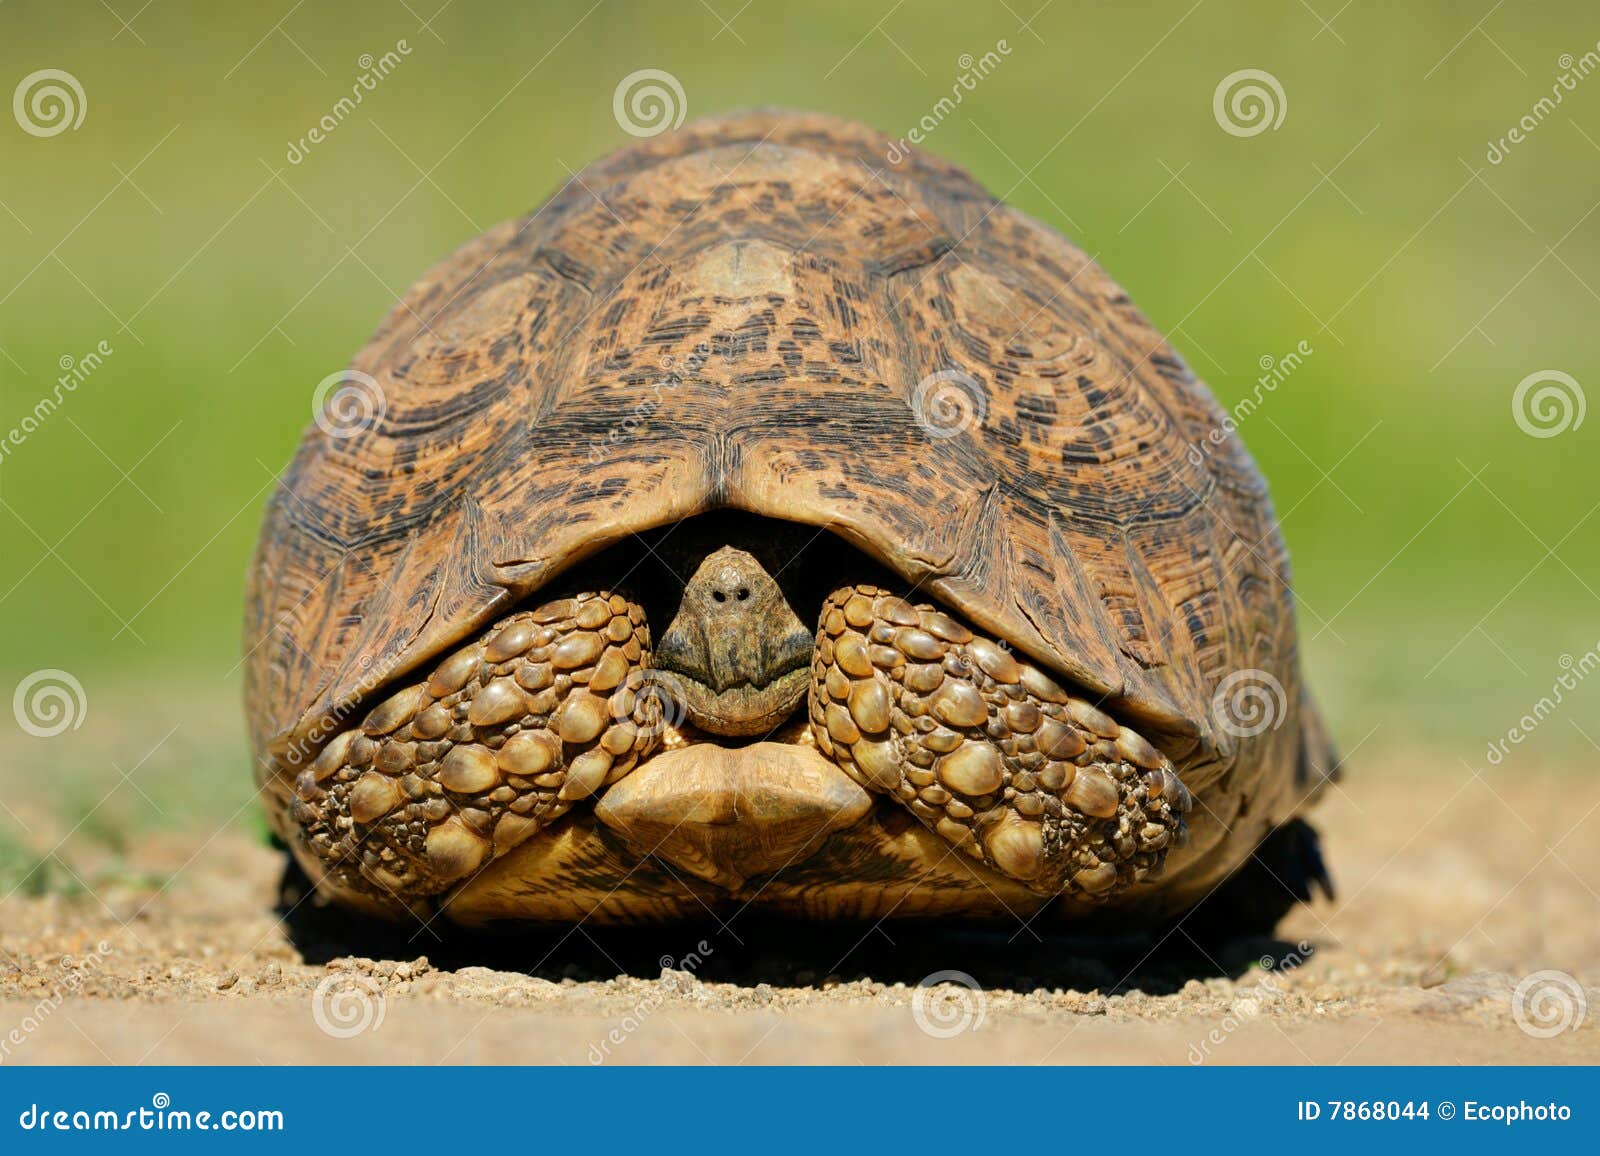 请问哪种可以作为宠物来养的陆龟能长很大？还能活很久的？ - 知乎